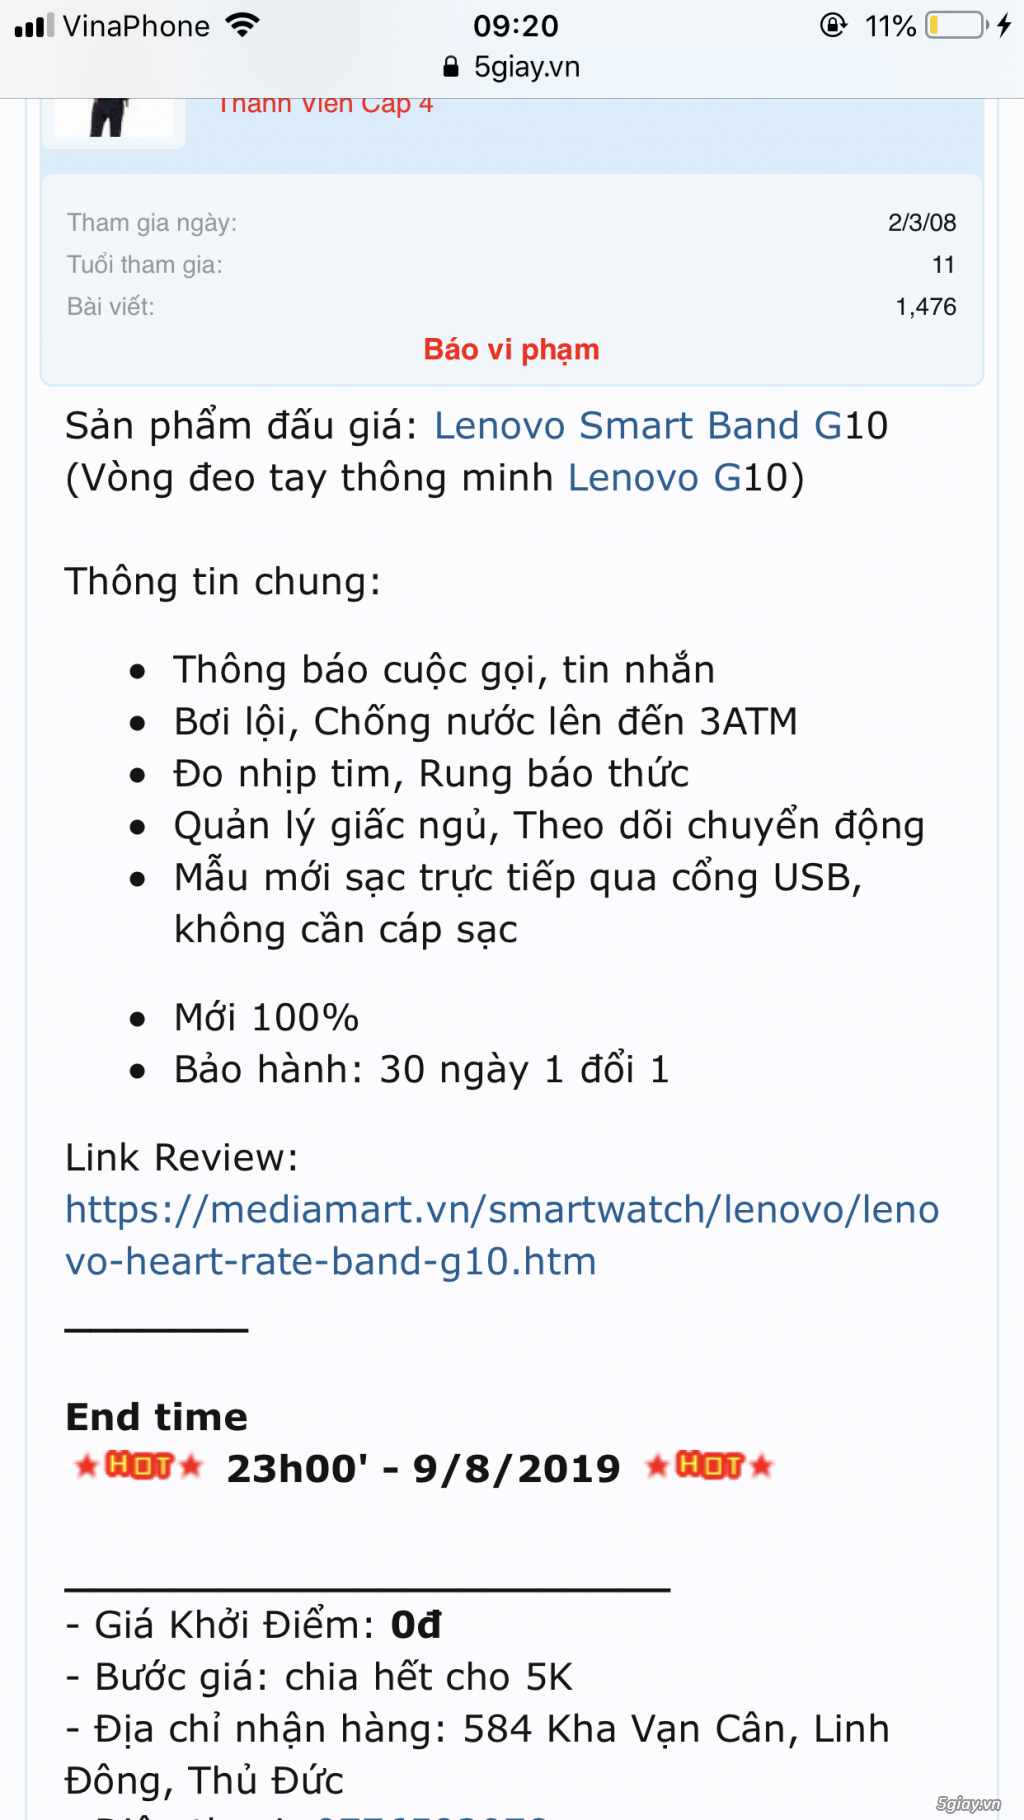 Lenovo Smart Band G10. End 9/8/2019 23:00